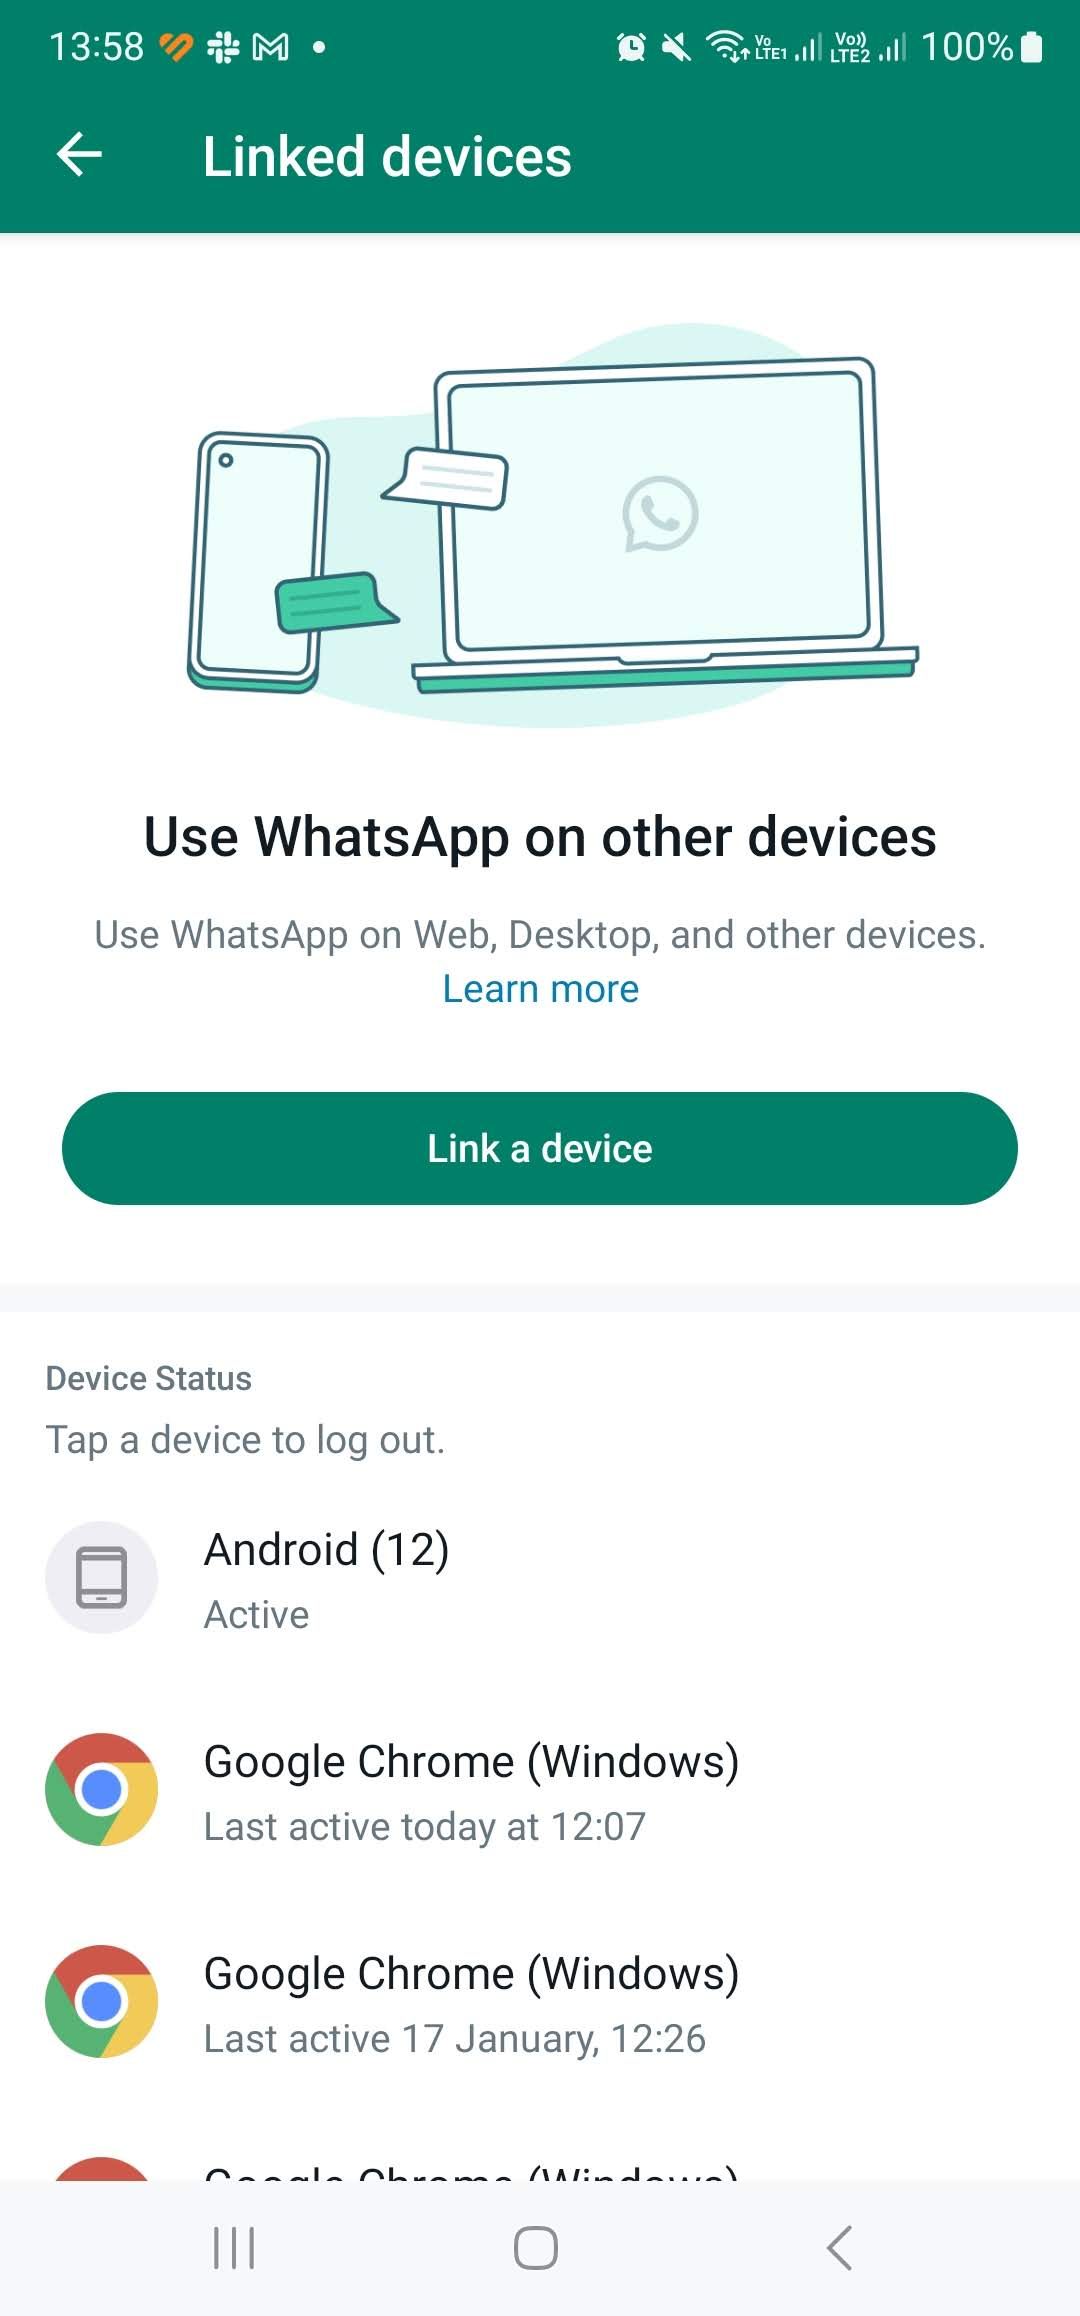 liste des appareils liés dans whatsapp